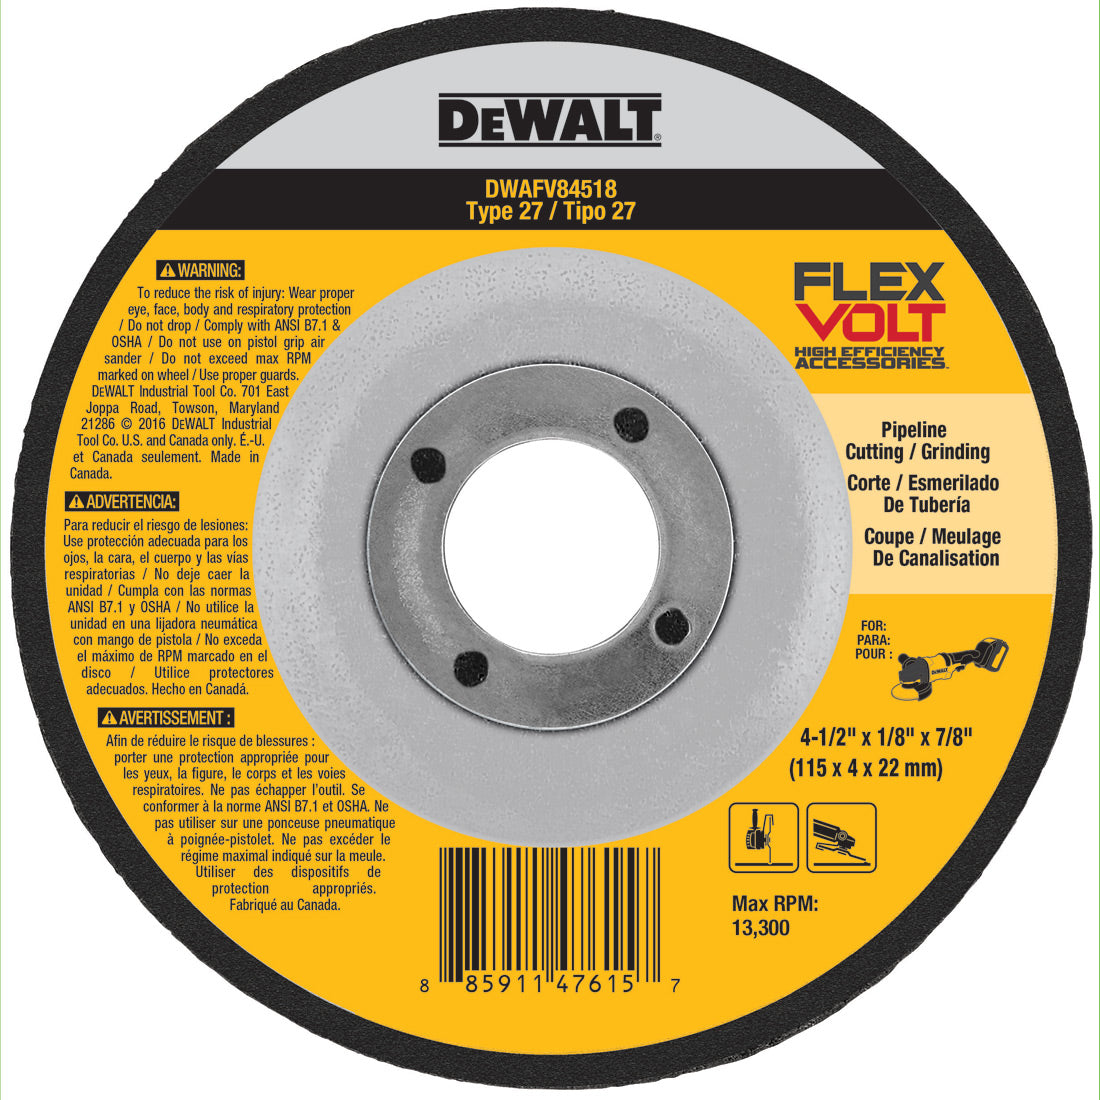 DeWalt DWAFV84518 4-1/2" x 1/8" x 7/8" Type 27 Metal Grinding Wheel